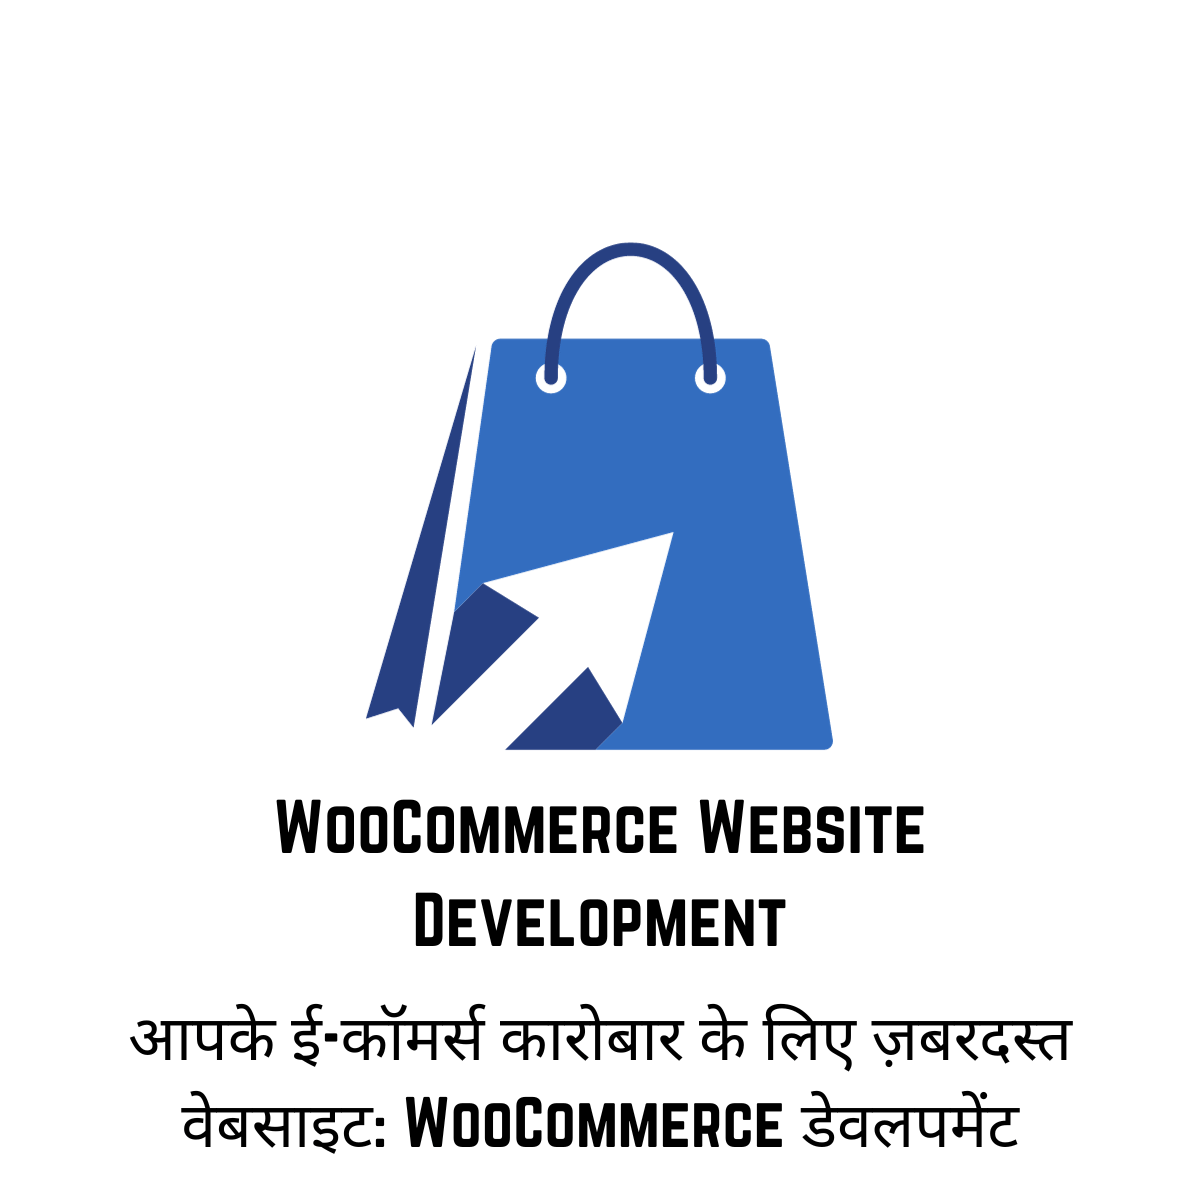 WooCommerce Website Development आपके ई-कॉमर्स कारोबार के लिए ज़बरदस्त वेबसाइट: WooCommerce डेवलपमेंट